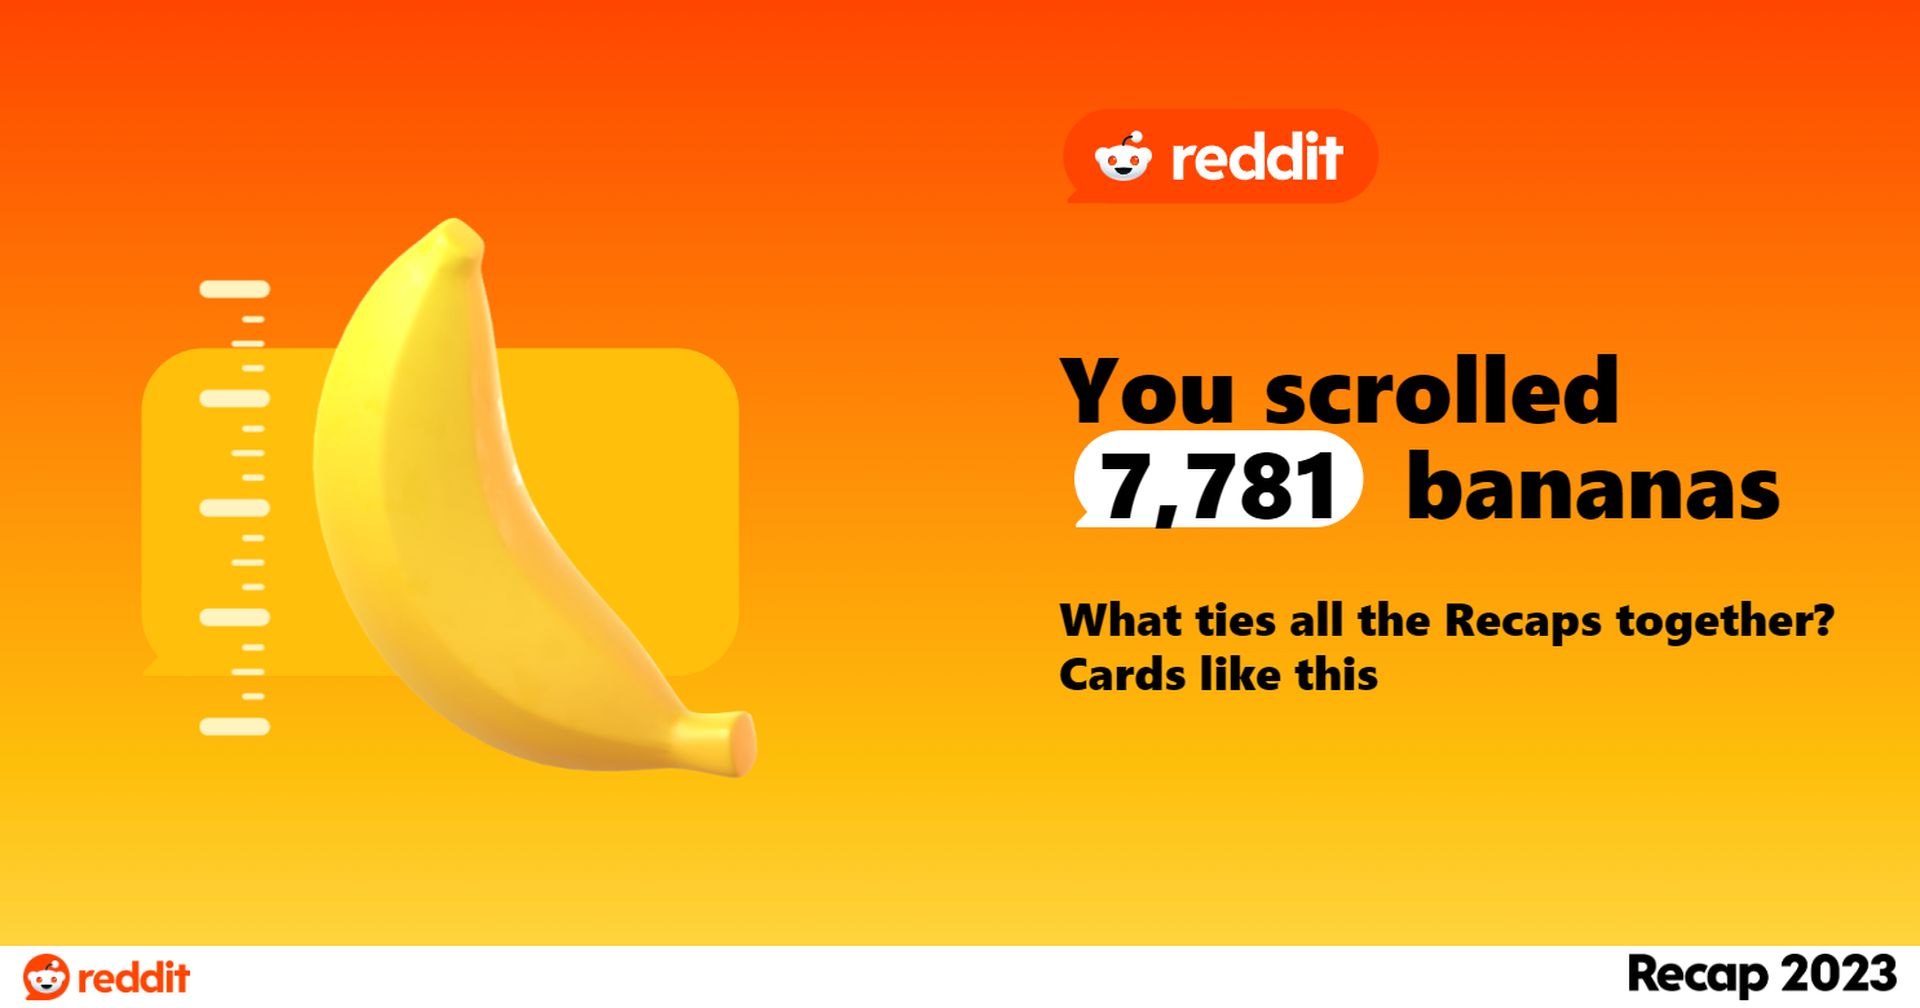 Reddit Recap 2023 ist da! Erfahren Sie, wie viele Bananen Sie dieses Jahr gescrollt haben